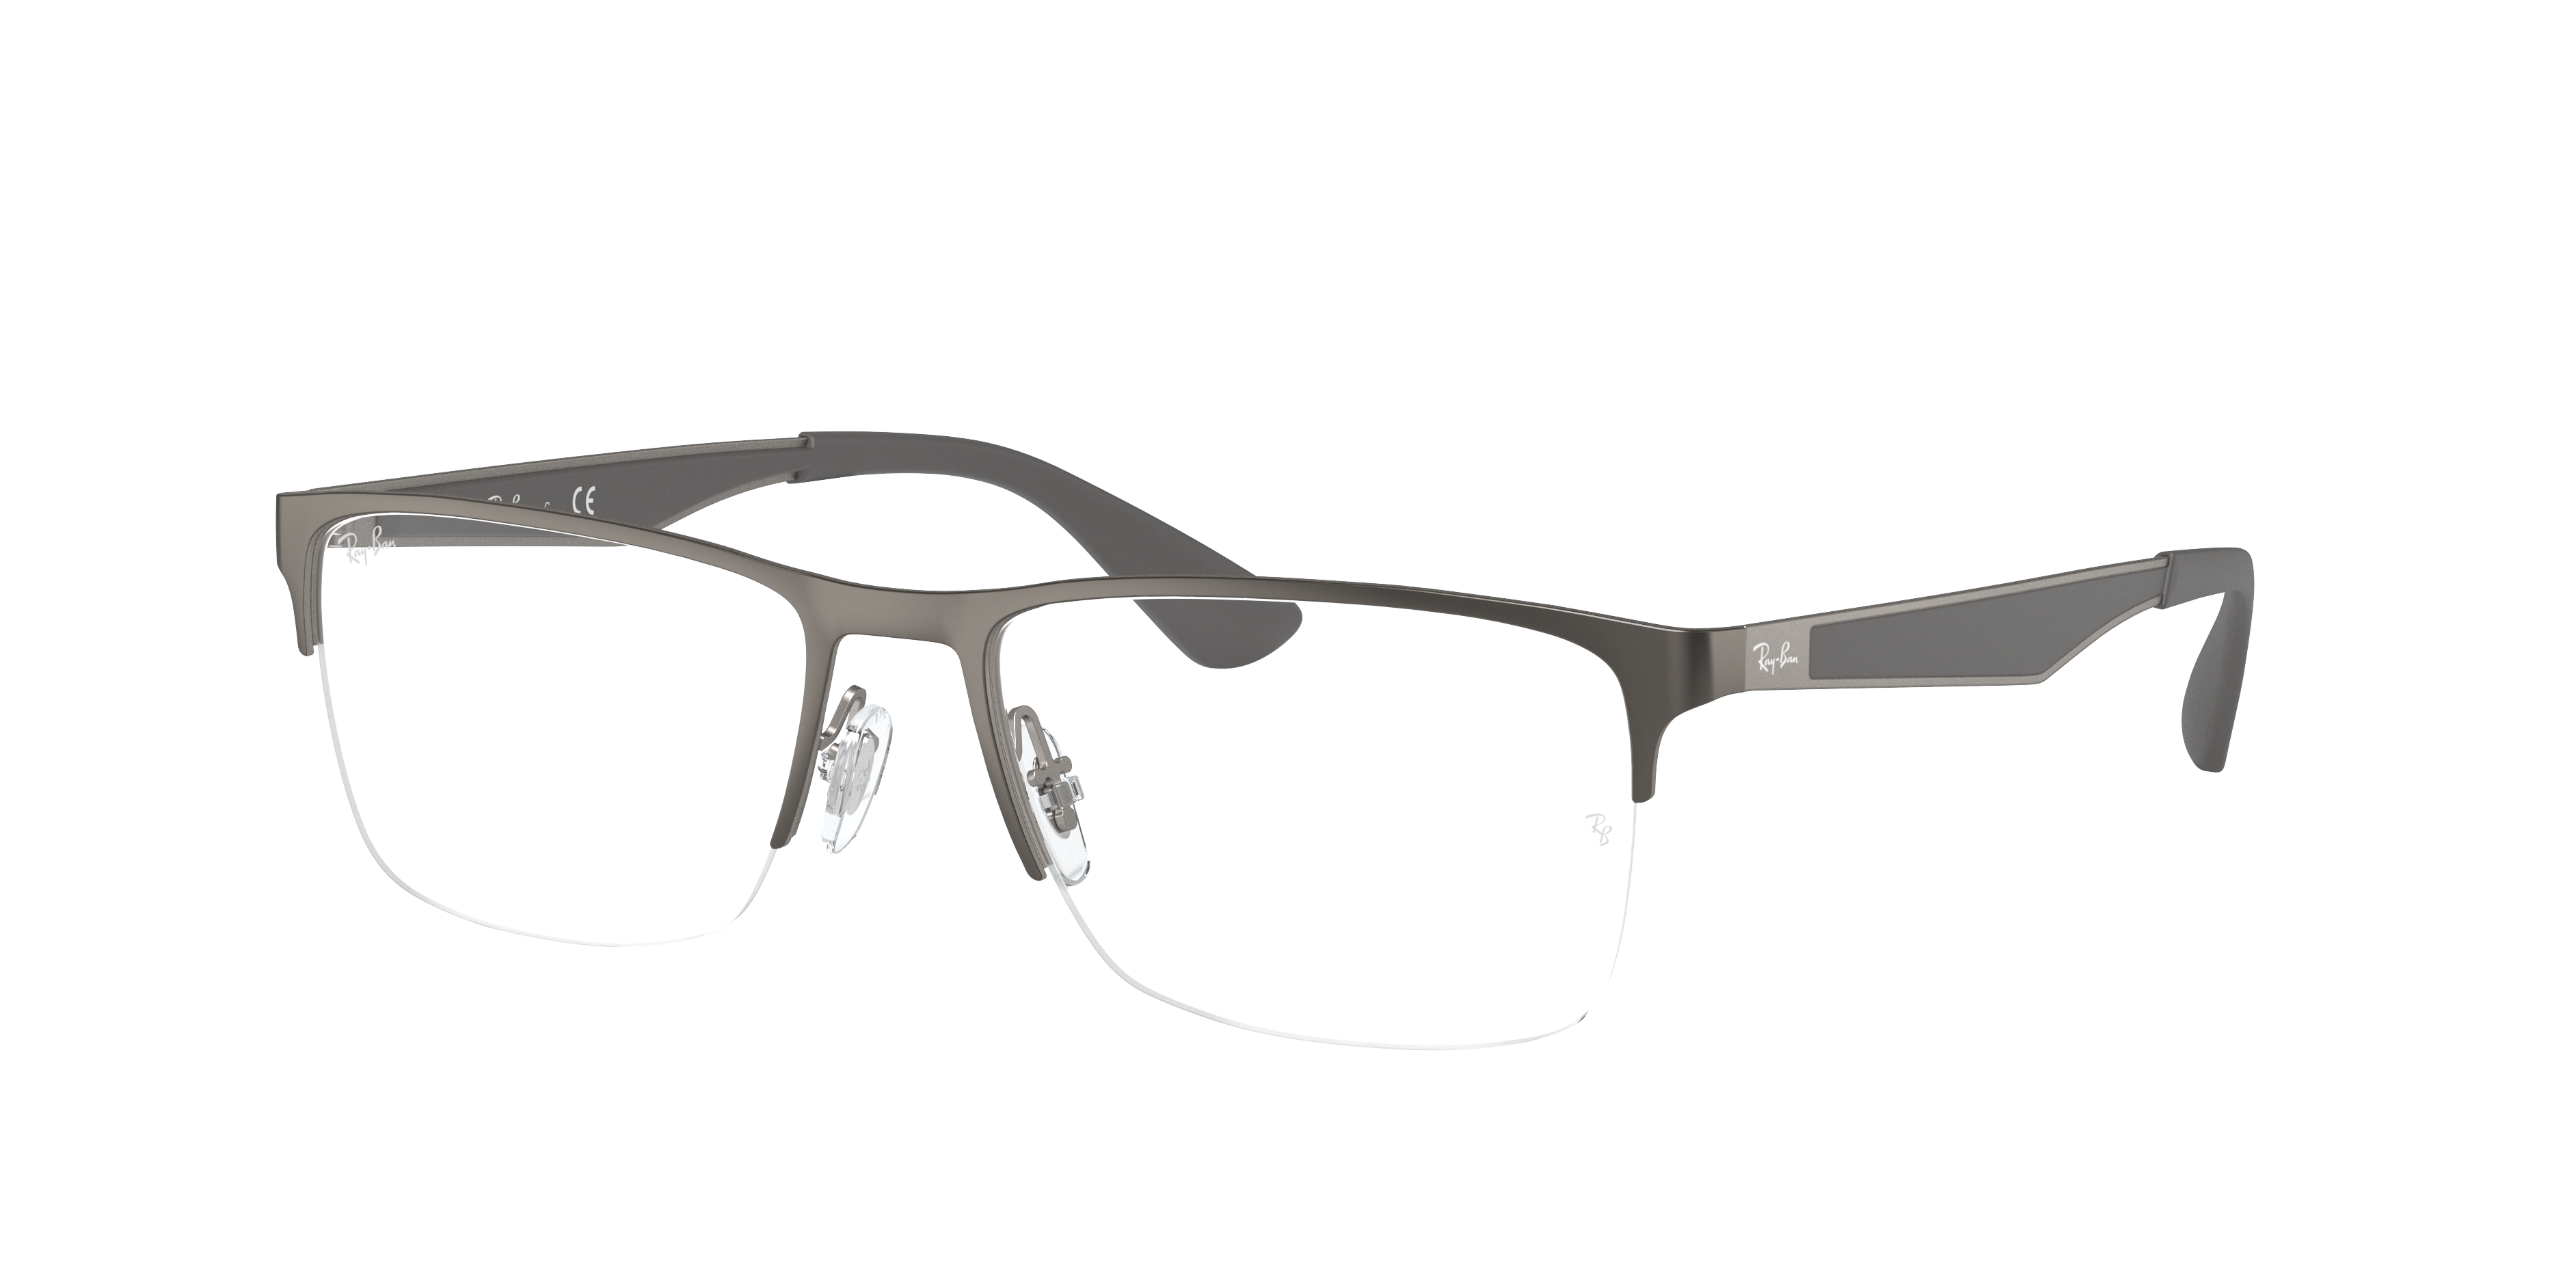 ray ban metal frame glasses